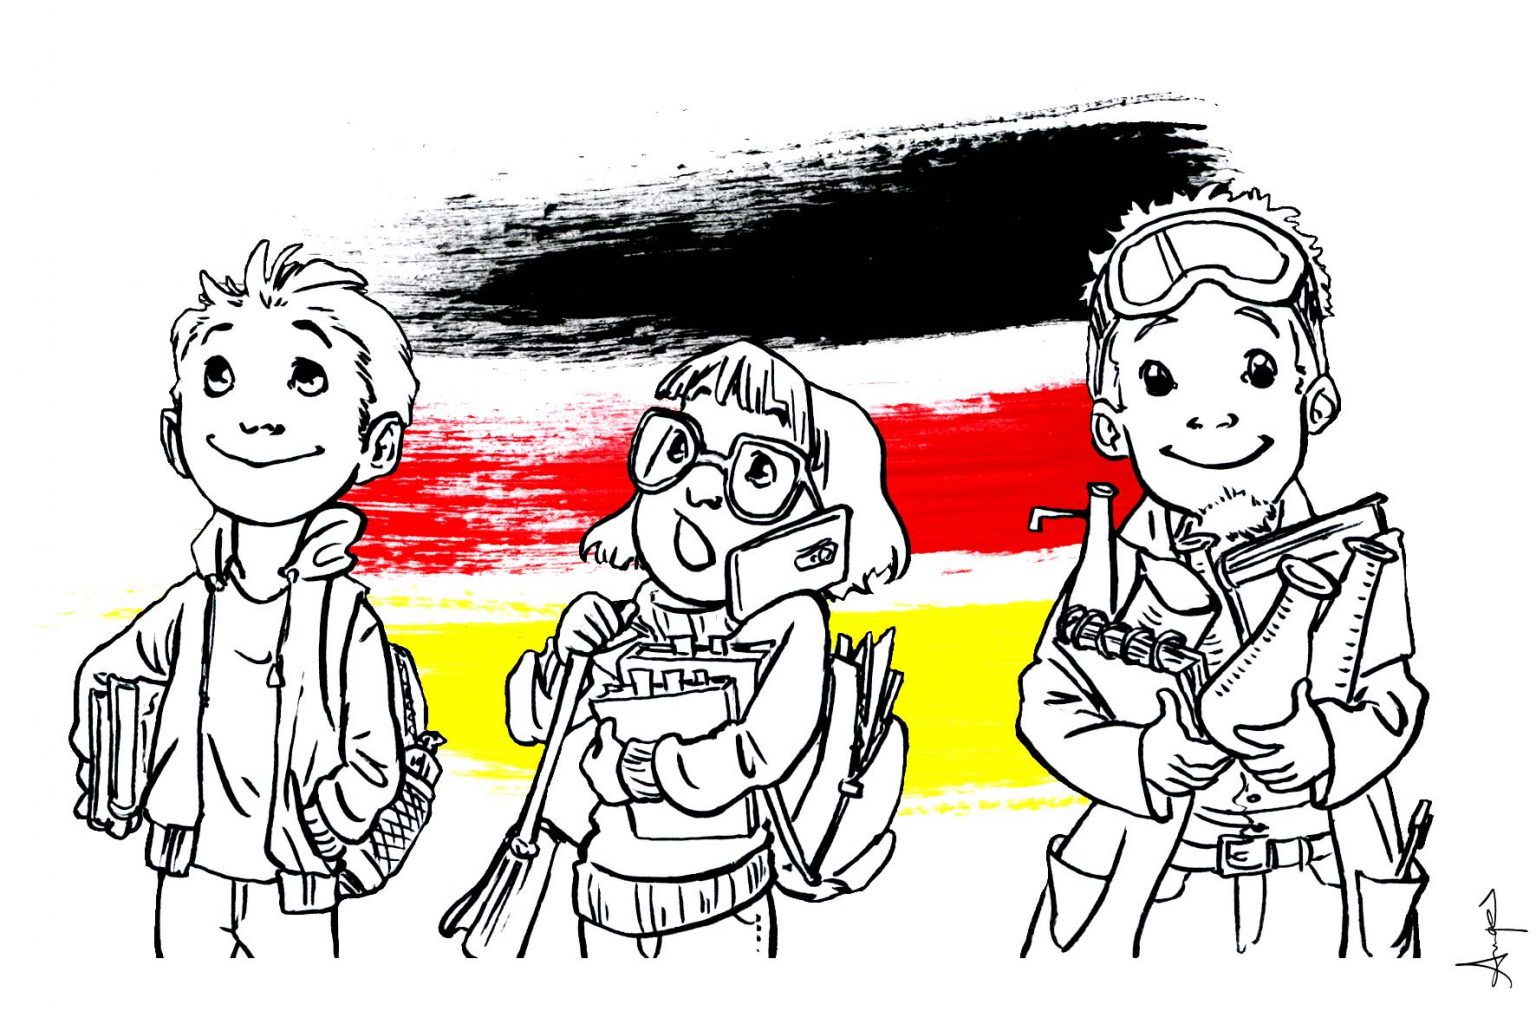 Studiare in Germania – Quali alternative ci sono?